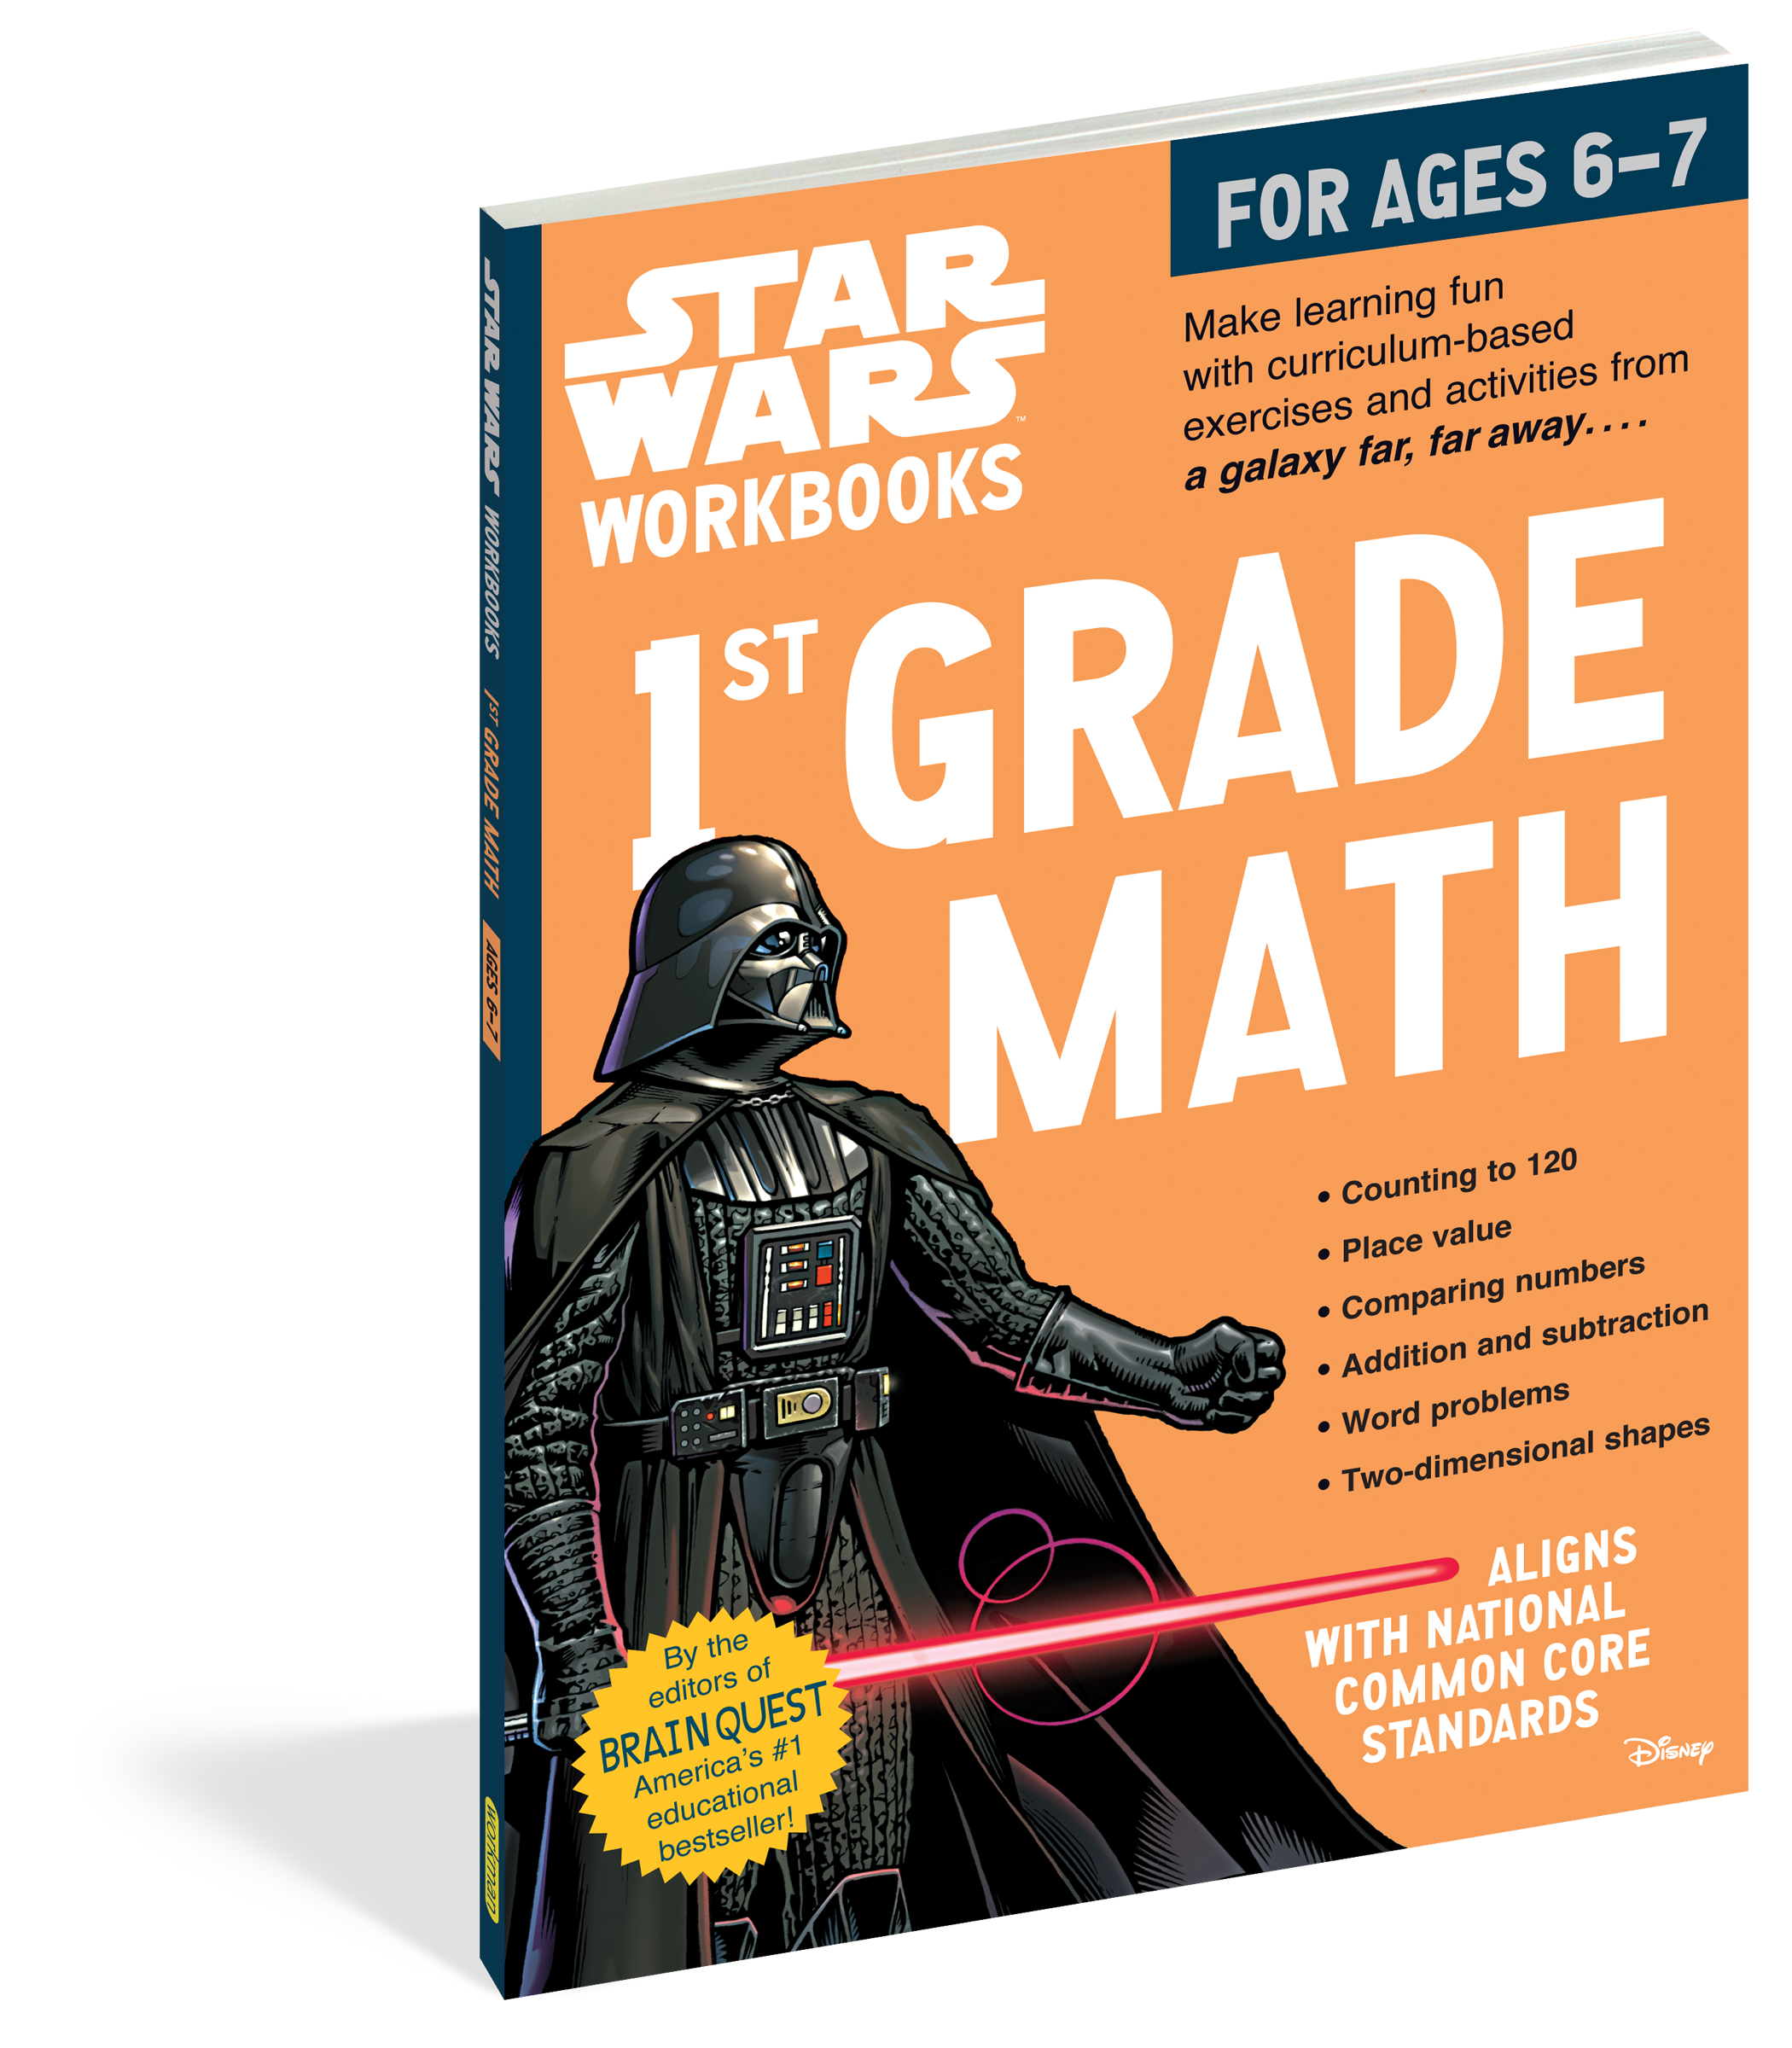 Star Wars Workbook - 1st Grade Math    